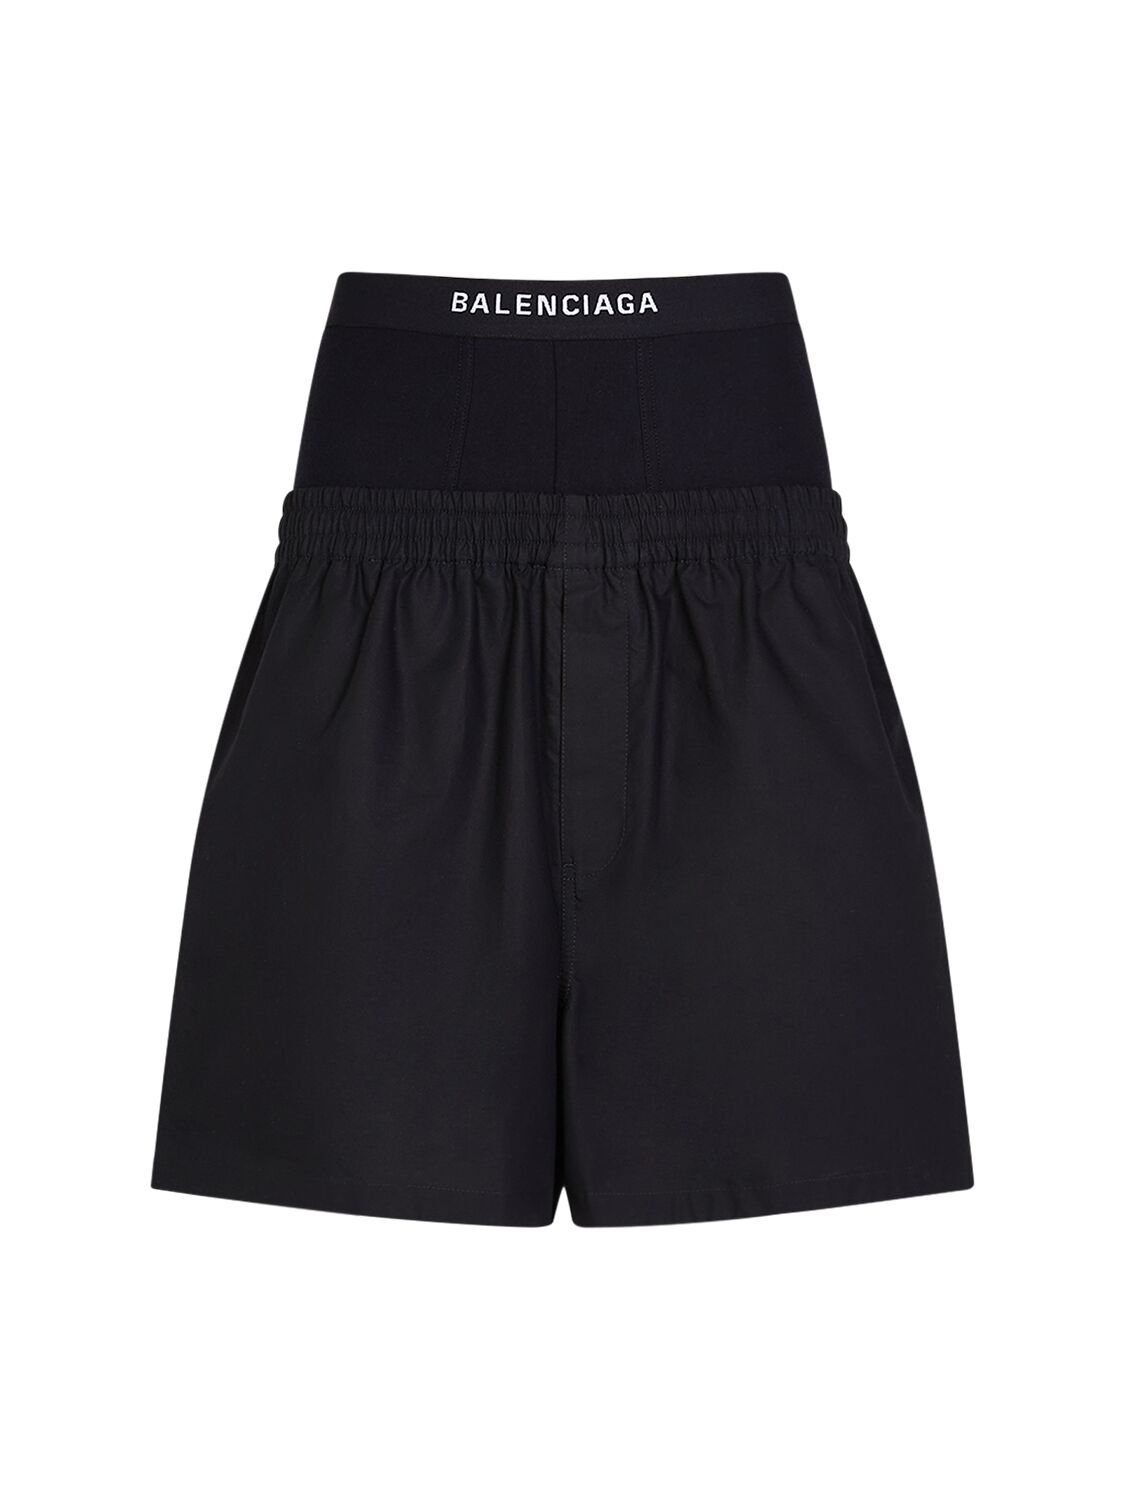 Balenciaga Hybrid Cotton Poplin Boxer Shorts In Black